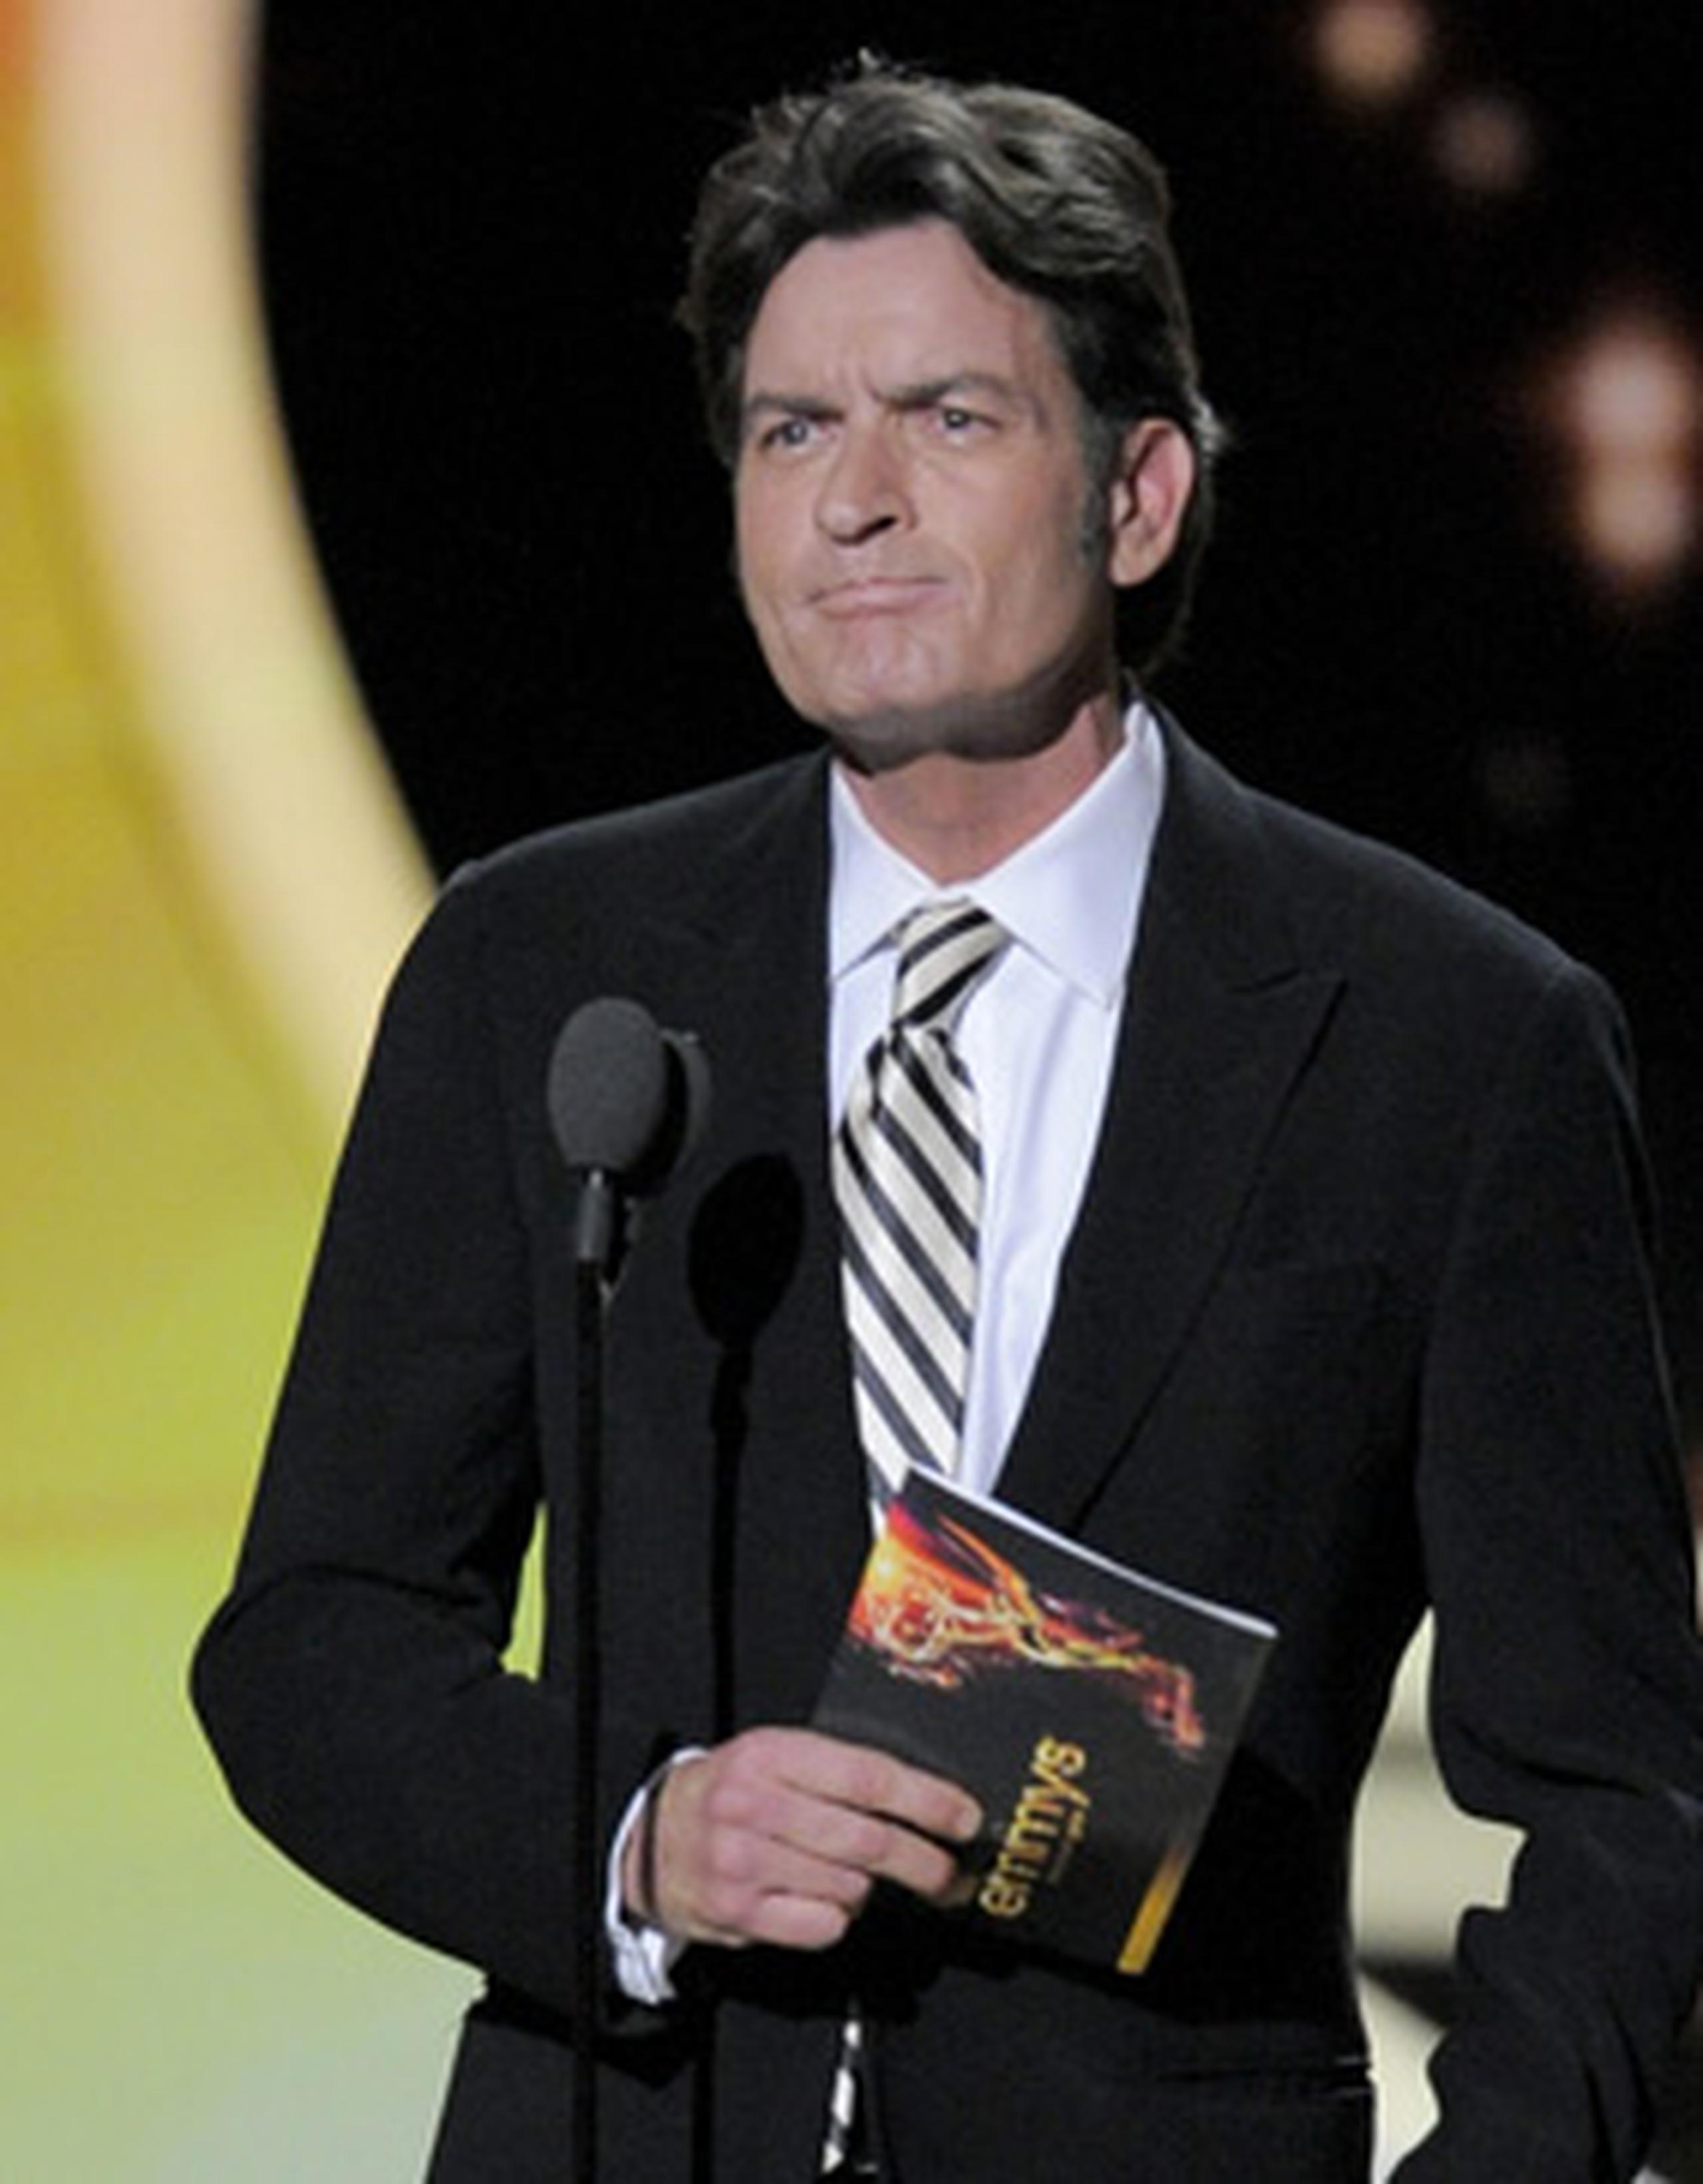 Charlie Sheen presentó el premio en la categoría de Mejor Actor en una serie cómica, que calificó como su "vieja categoría". (AP)